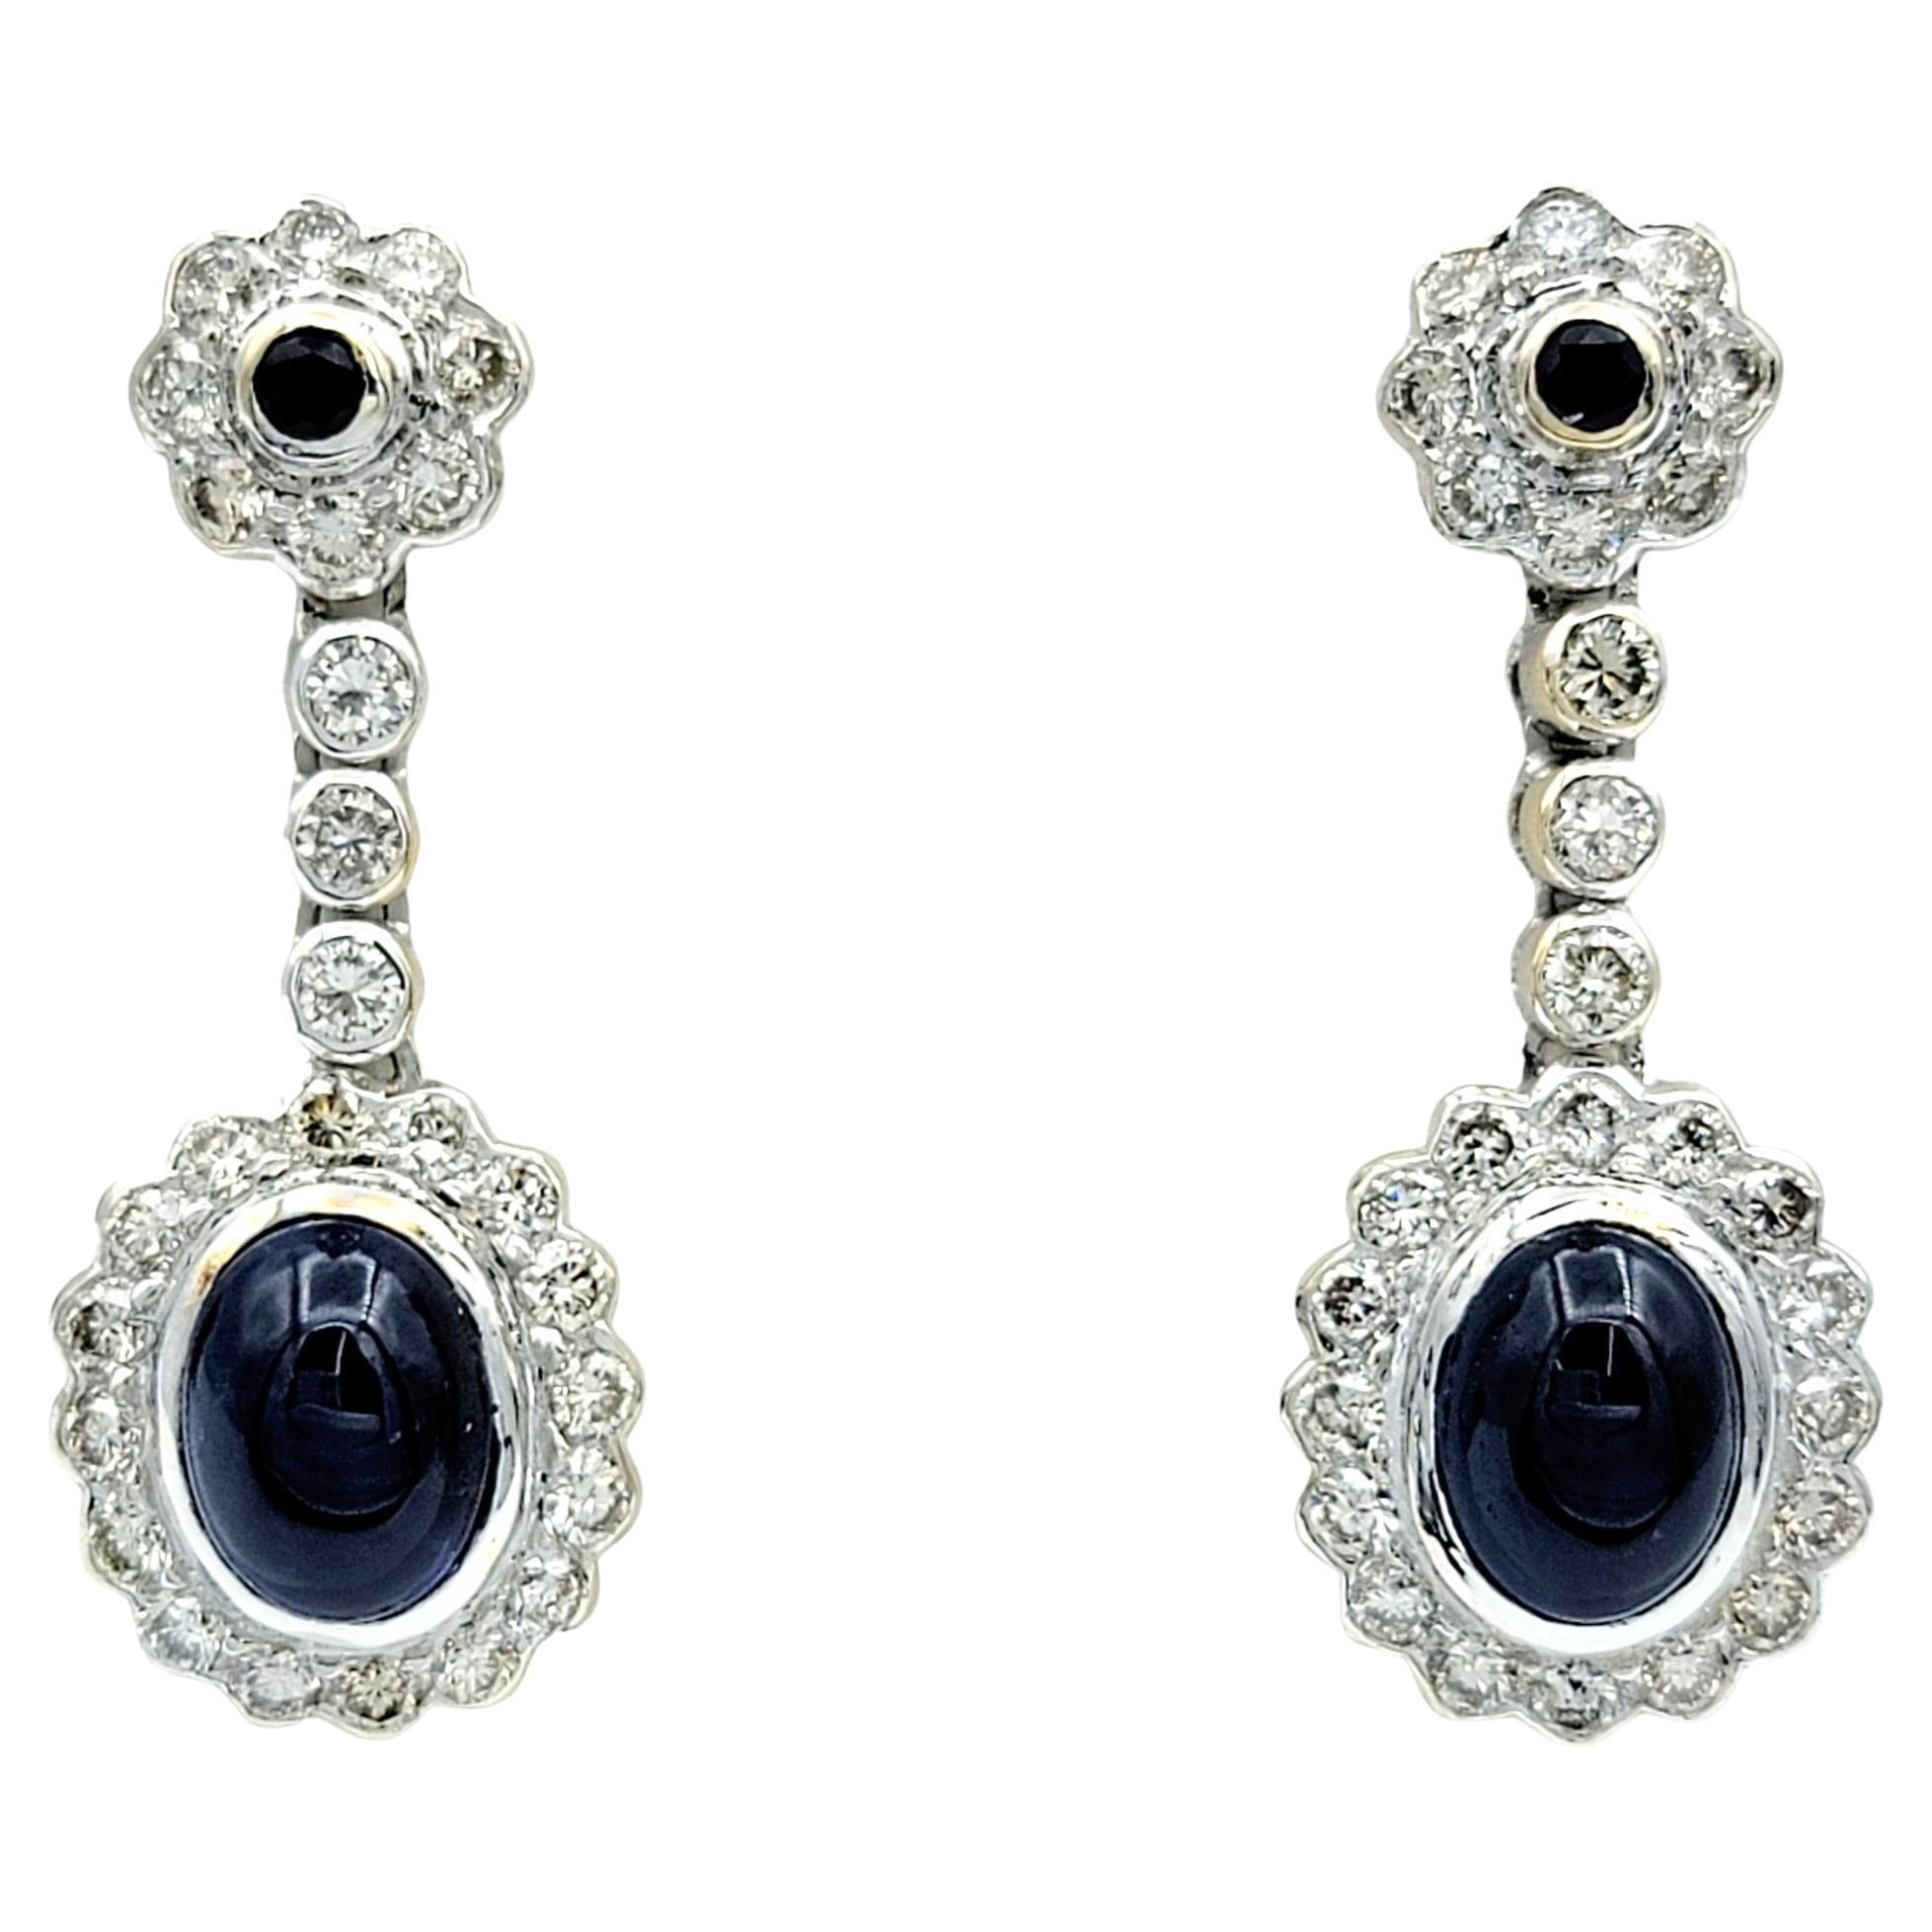 Boucles d'oreilles pendantes en or blanc 18 carats avec saphir bleu cabochon et halo de diamants